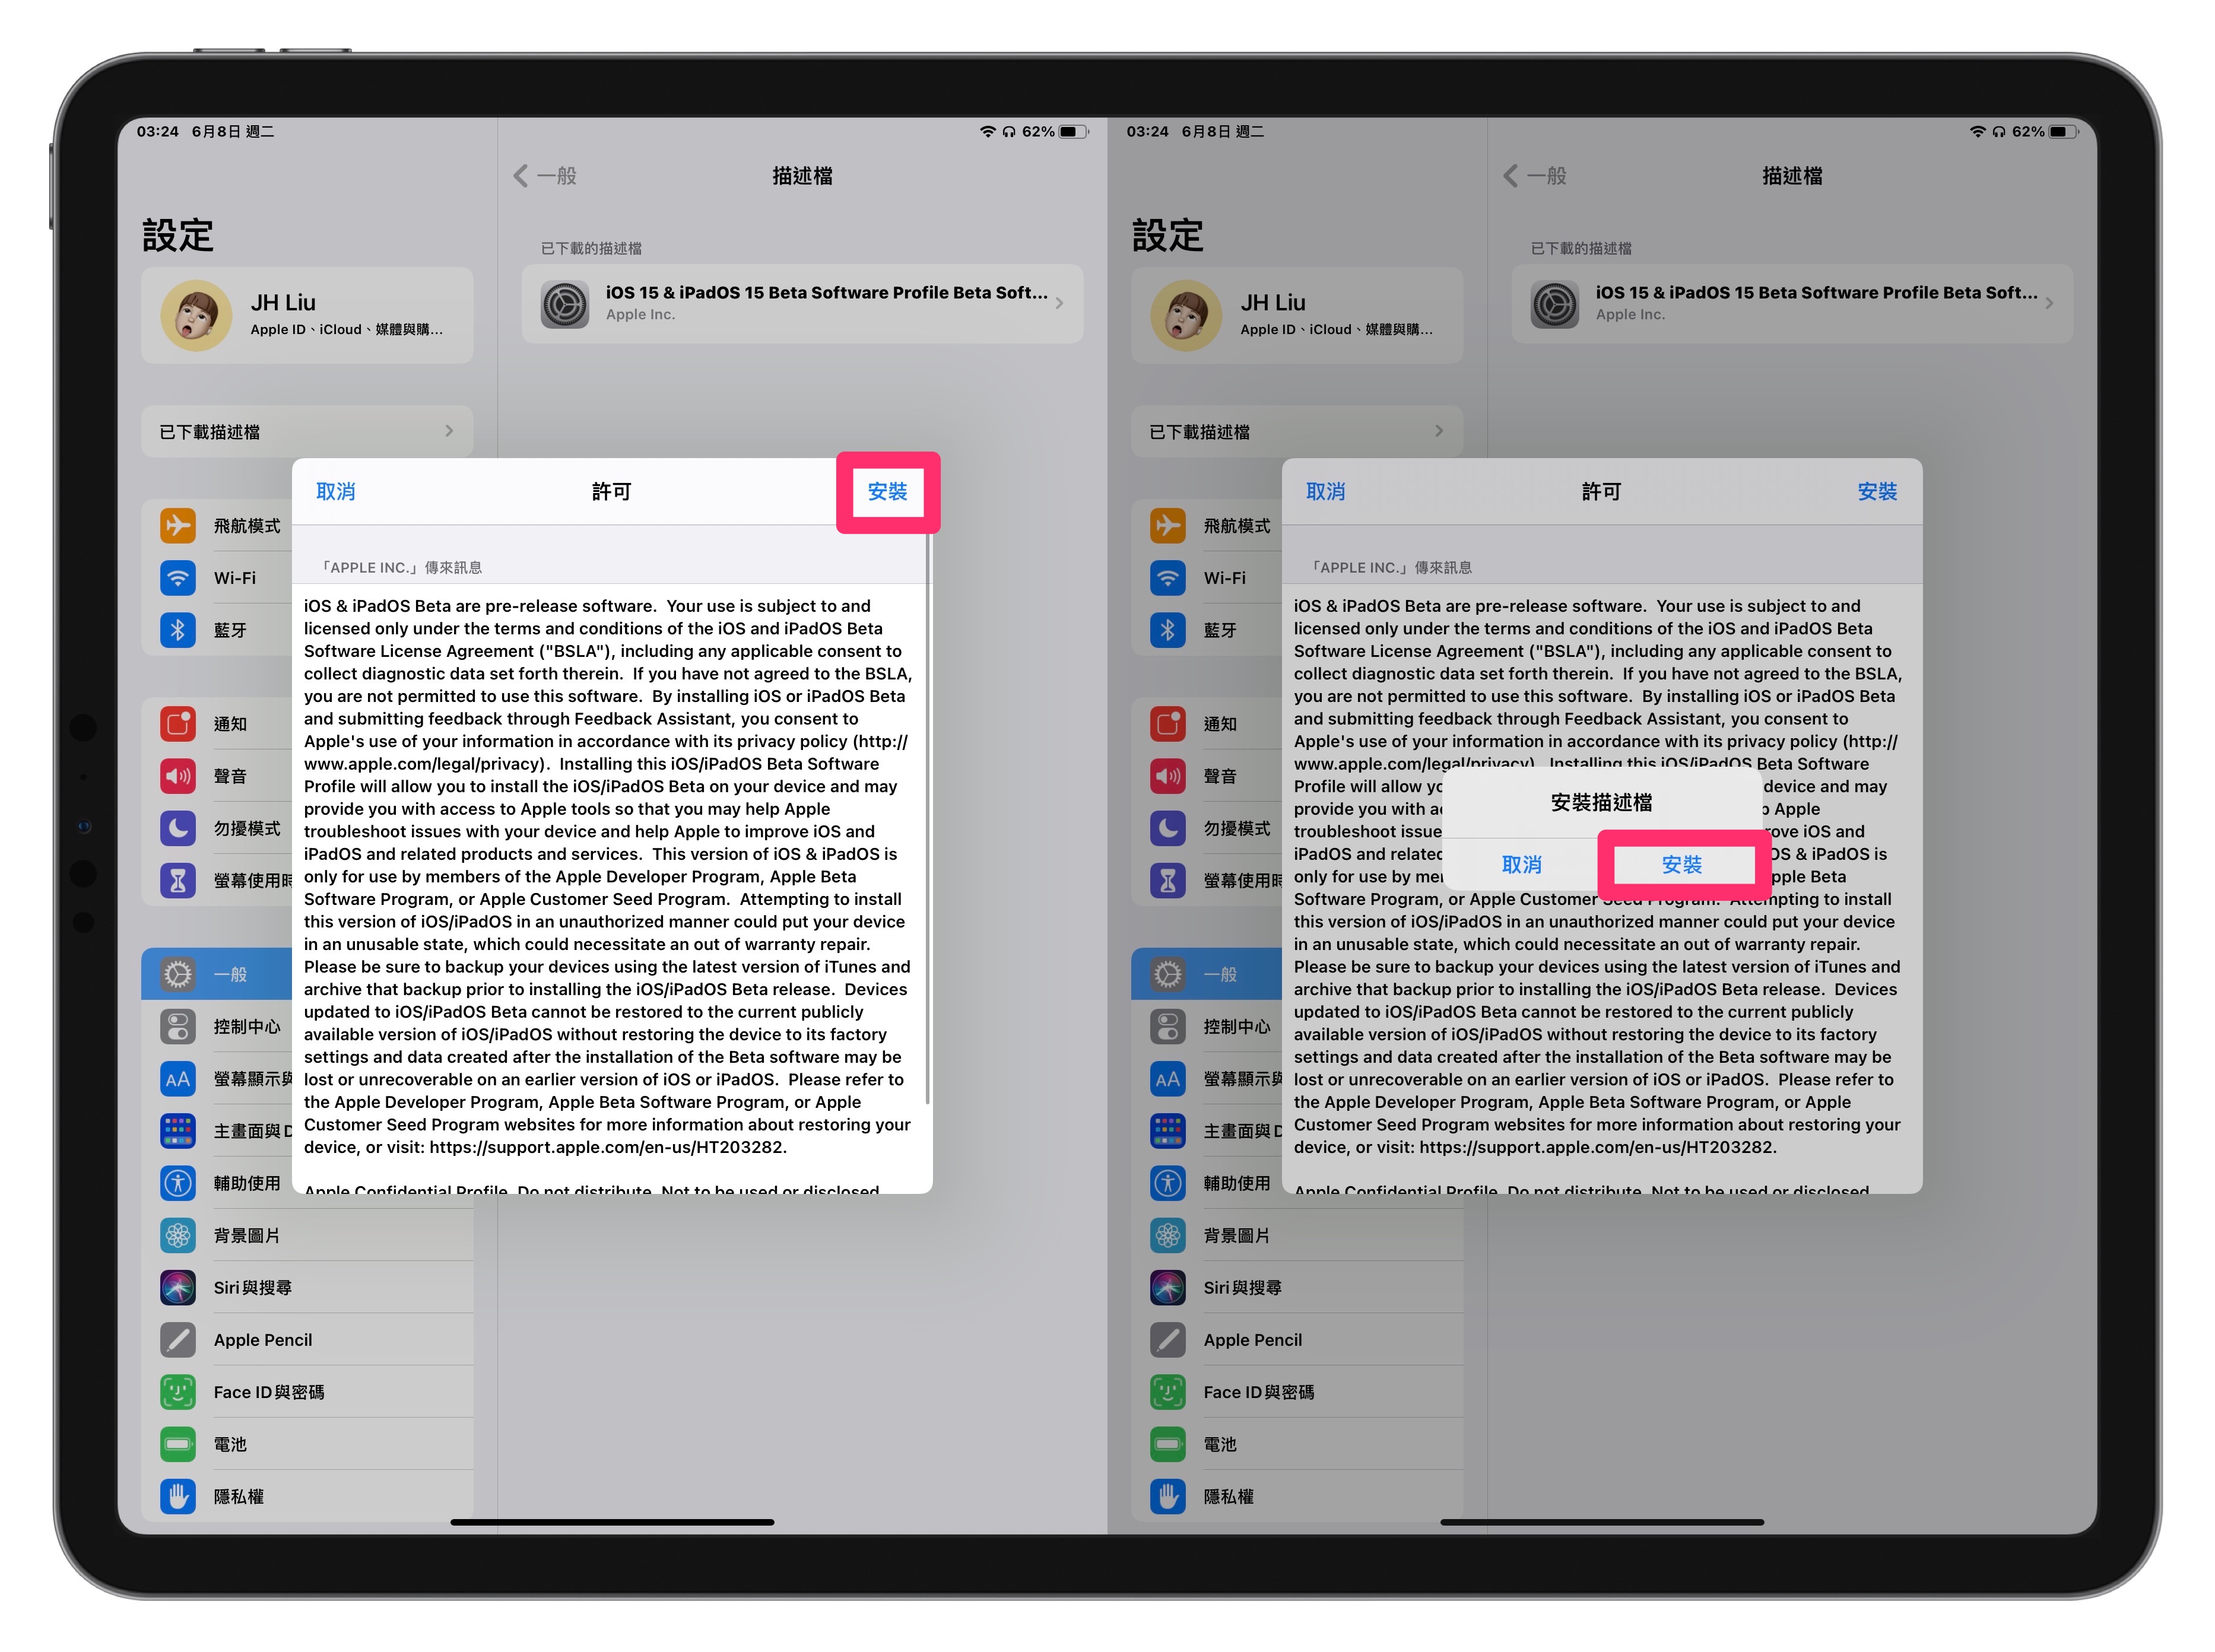 iPadOS 15 beta